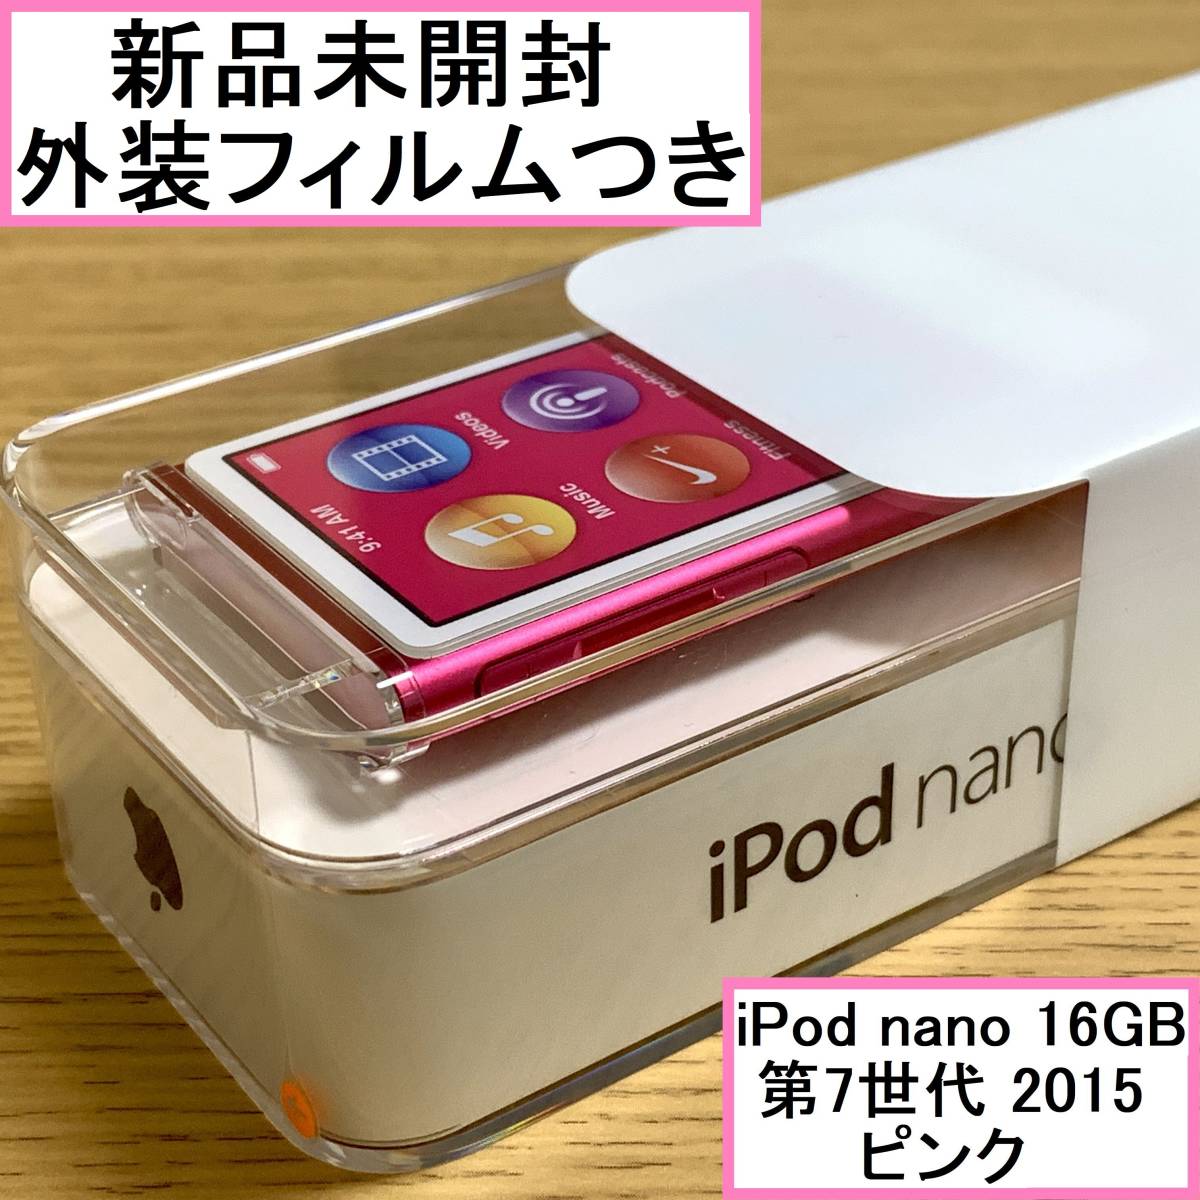 【新品未開封】 Apple アップル iPod nano 本体 第7世代 Bluetooth 2015年モデル ピンク 16GB MKMV2J/A アイポッドナノ 外装フィルムつき_画像1